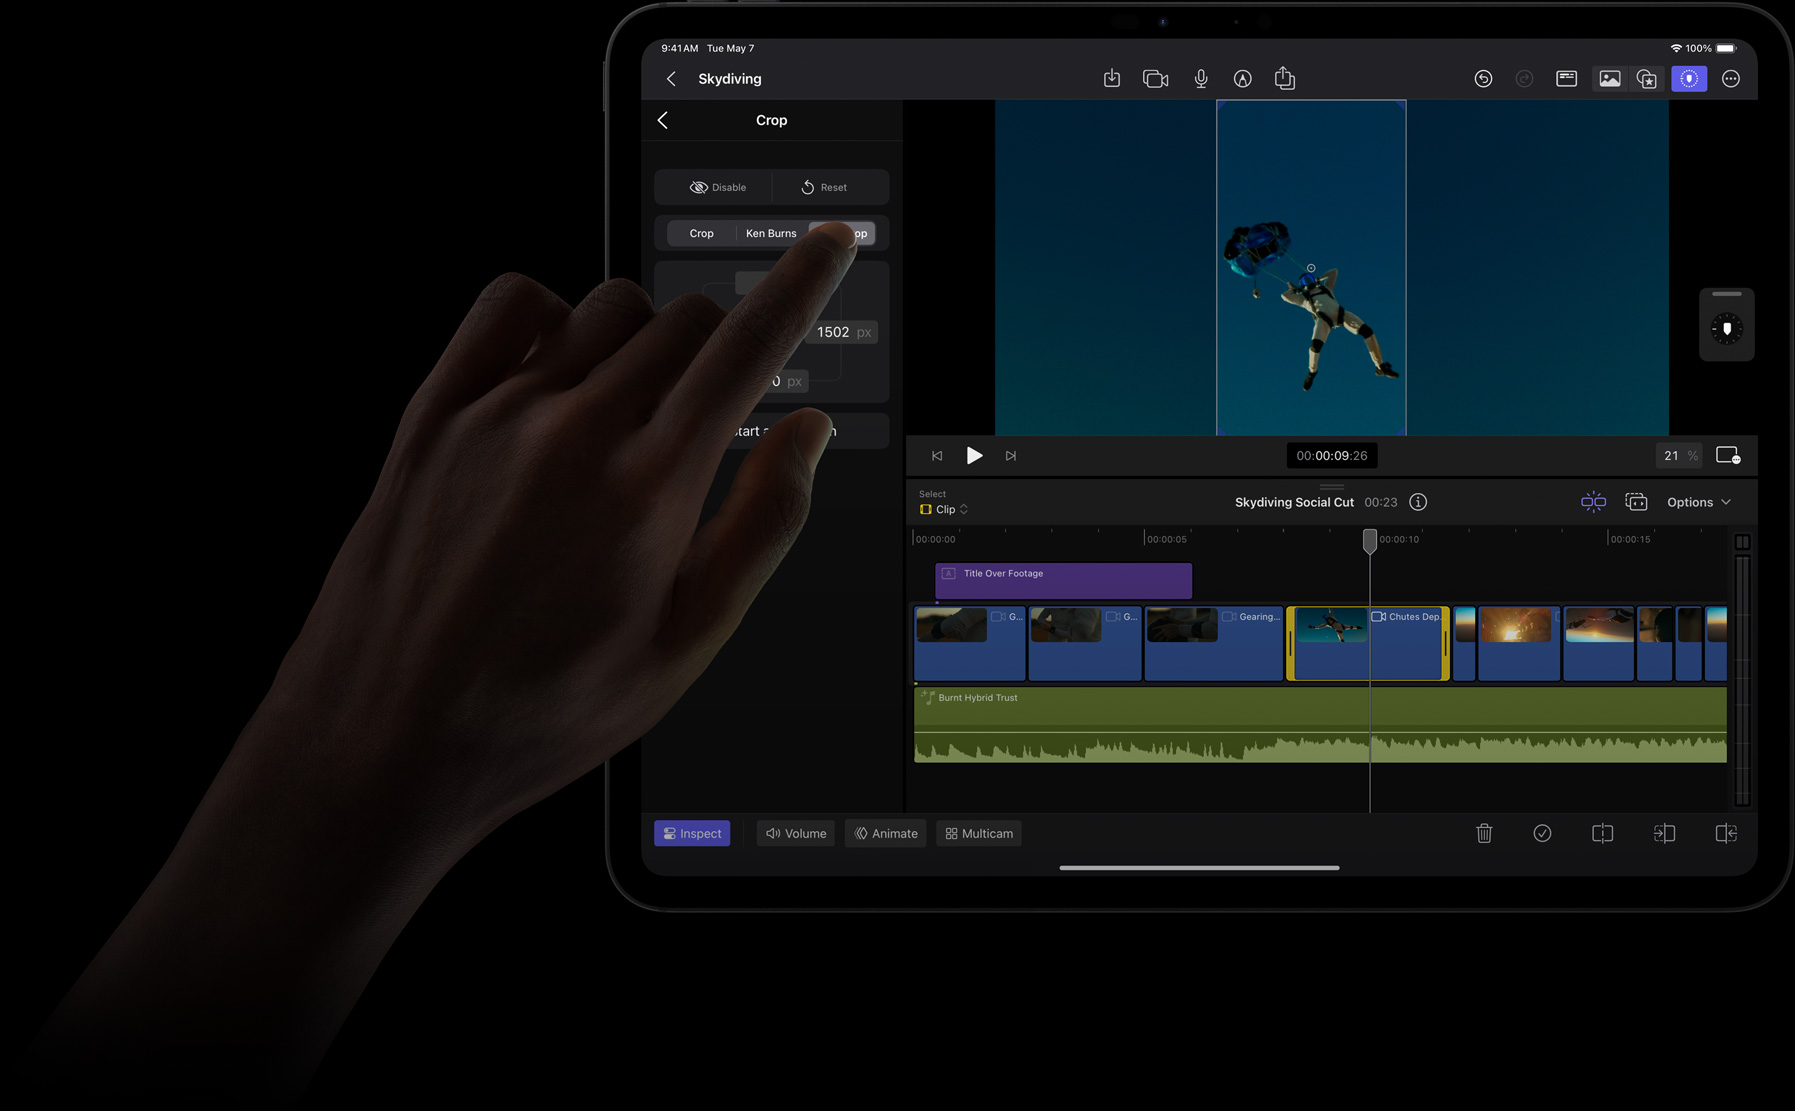 Doigt touchant l’écran de l’iPad Pro pour sélectionner un élément dans le menu Outils de cadrage de Final Cut Pro.